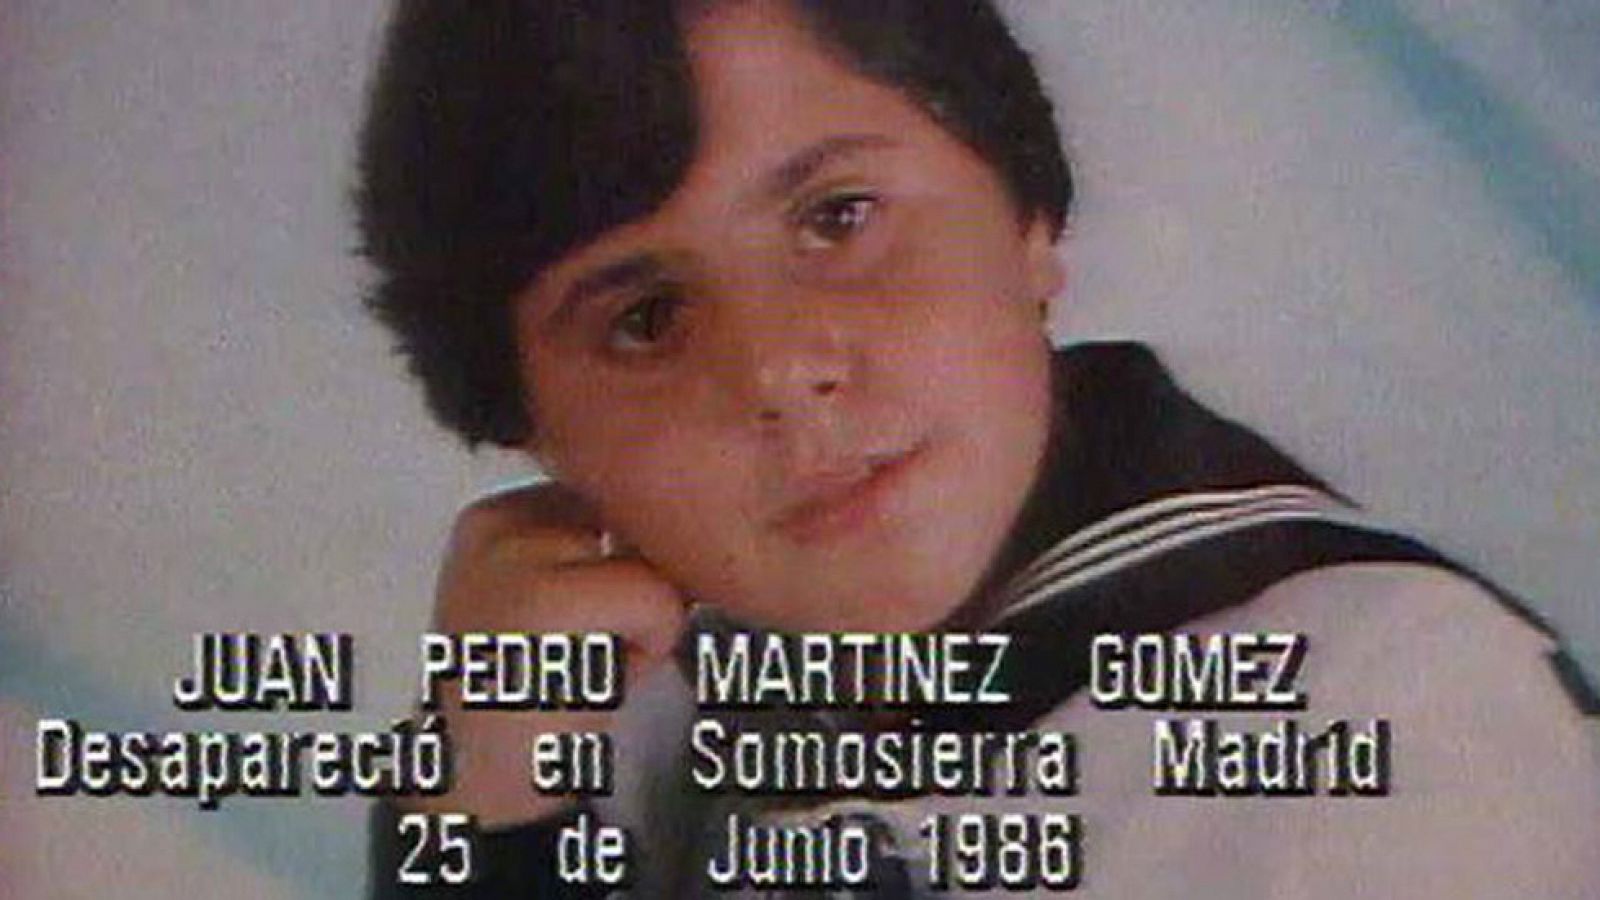 'Quién sabe dónde' - El niño desaparecido de Somosierra (1992) - Comienzo